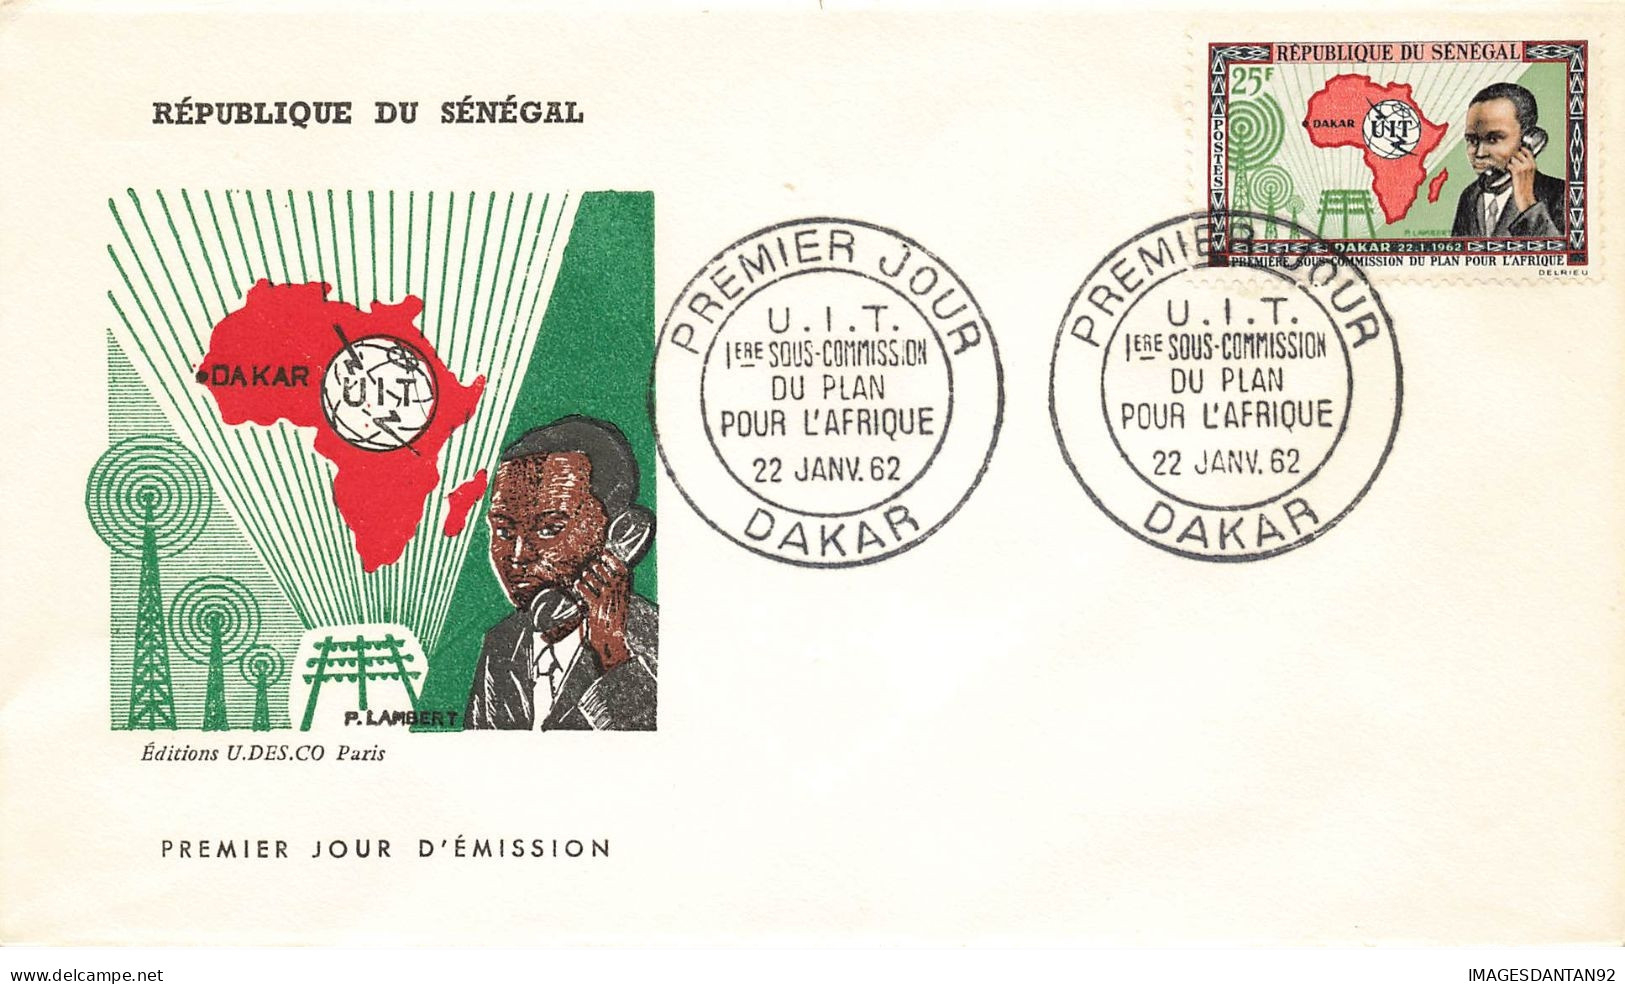 SENEGAL #26185 DAKAR 1962 PREMIER JOUR SOUS COMMISSION DU PLAN POUR AFRIQUE - Sénégal (1960-...)